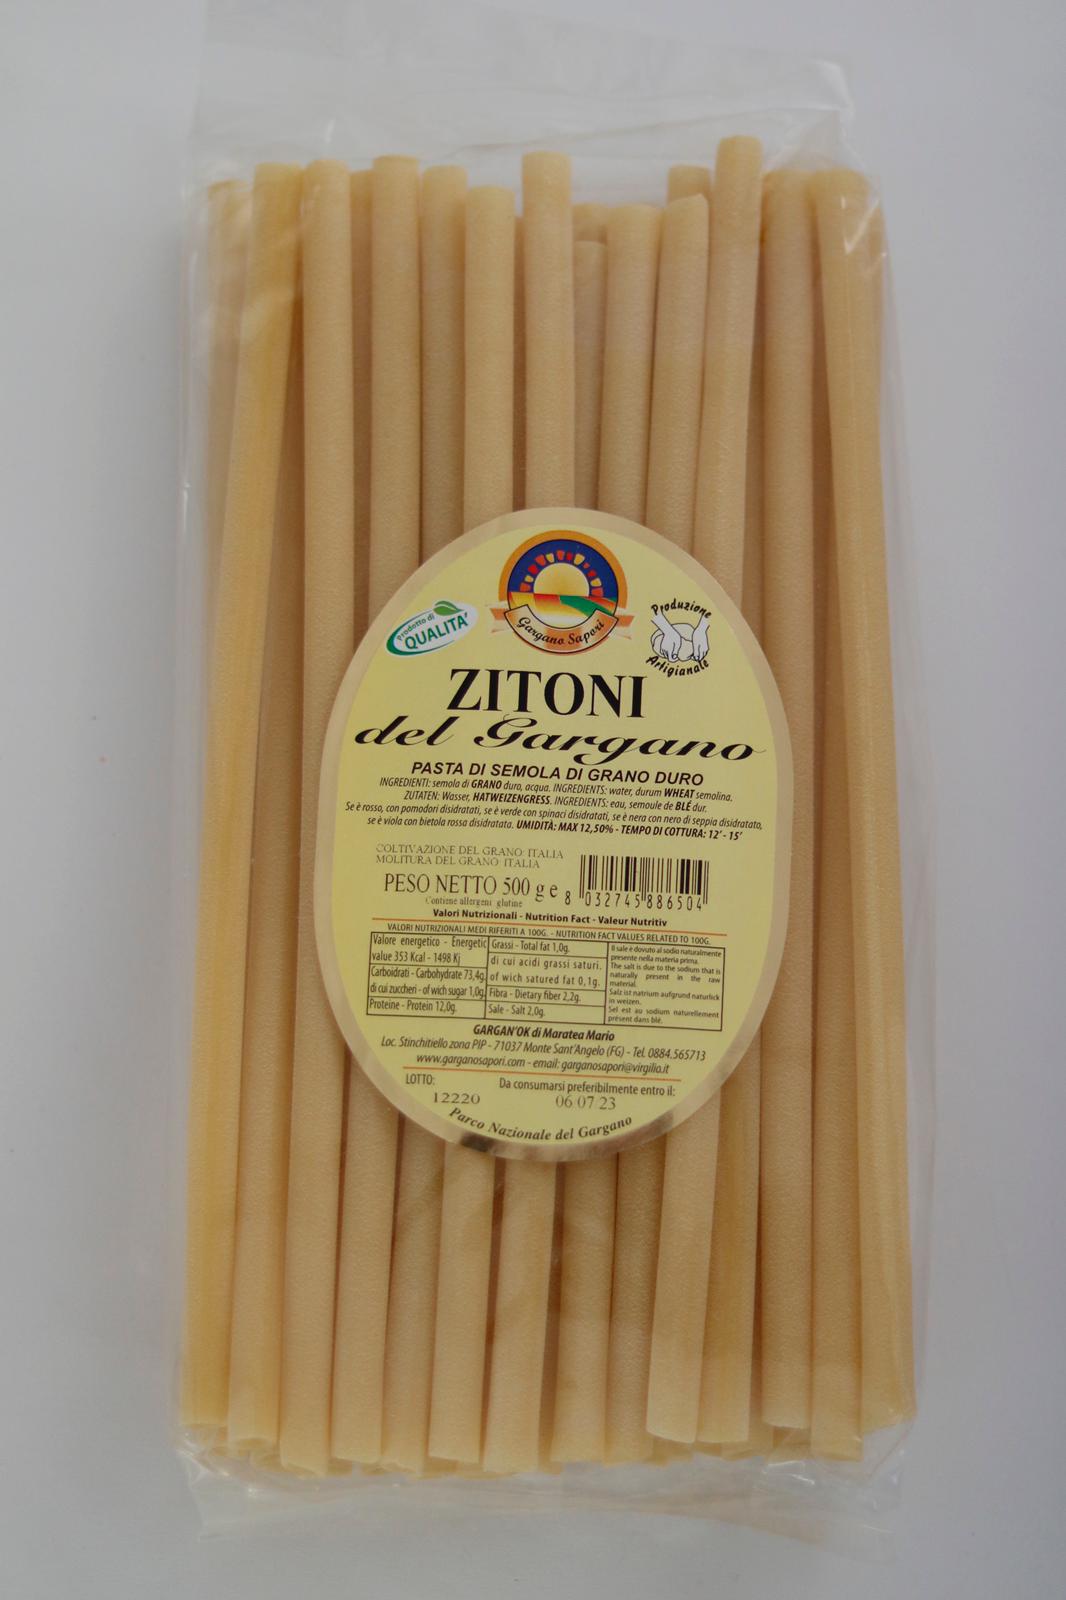 ZITONI 500 G - I migliori prodotti Made in Italy da Fiera di Monza Shop - Solo 4.99€! Acquista subito su Fiera di Monza Shop!